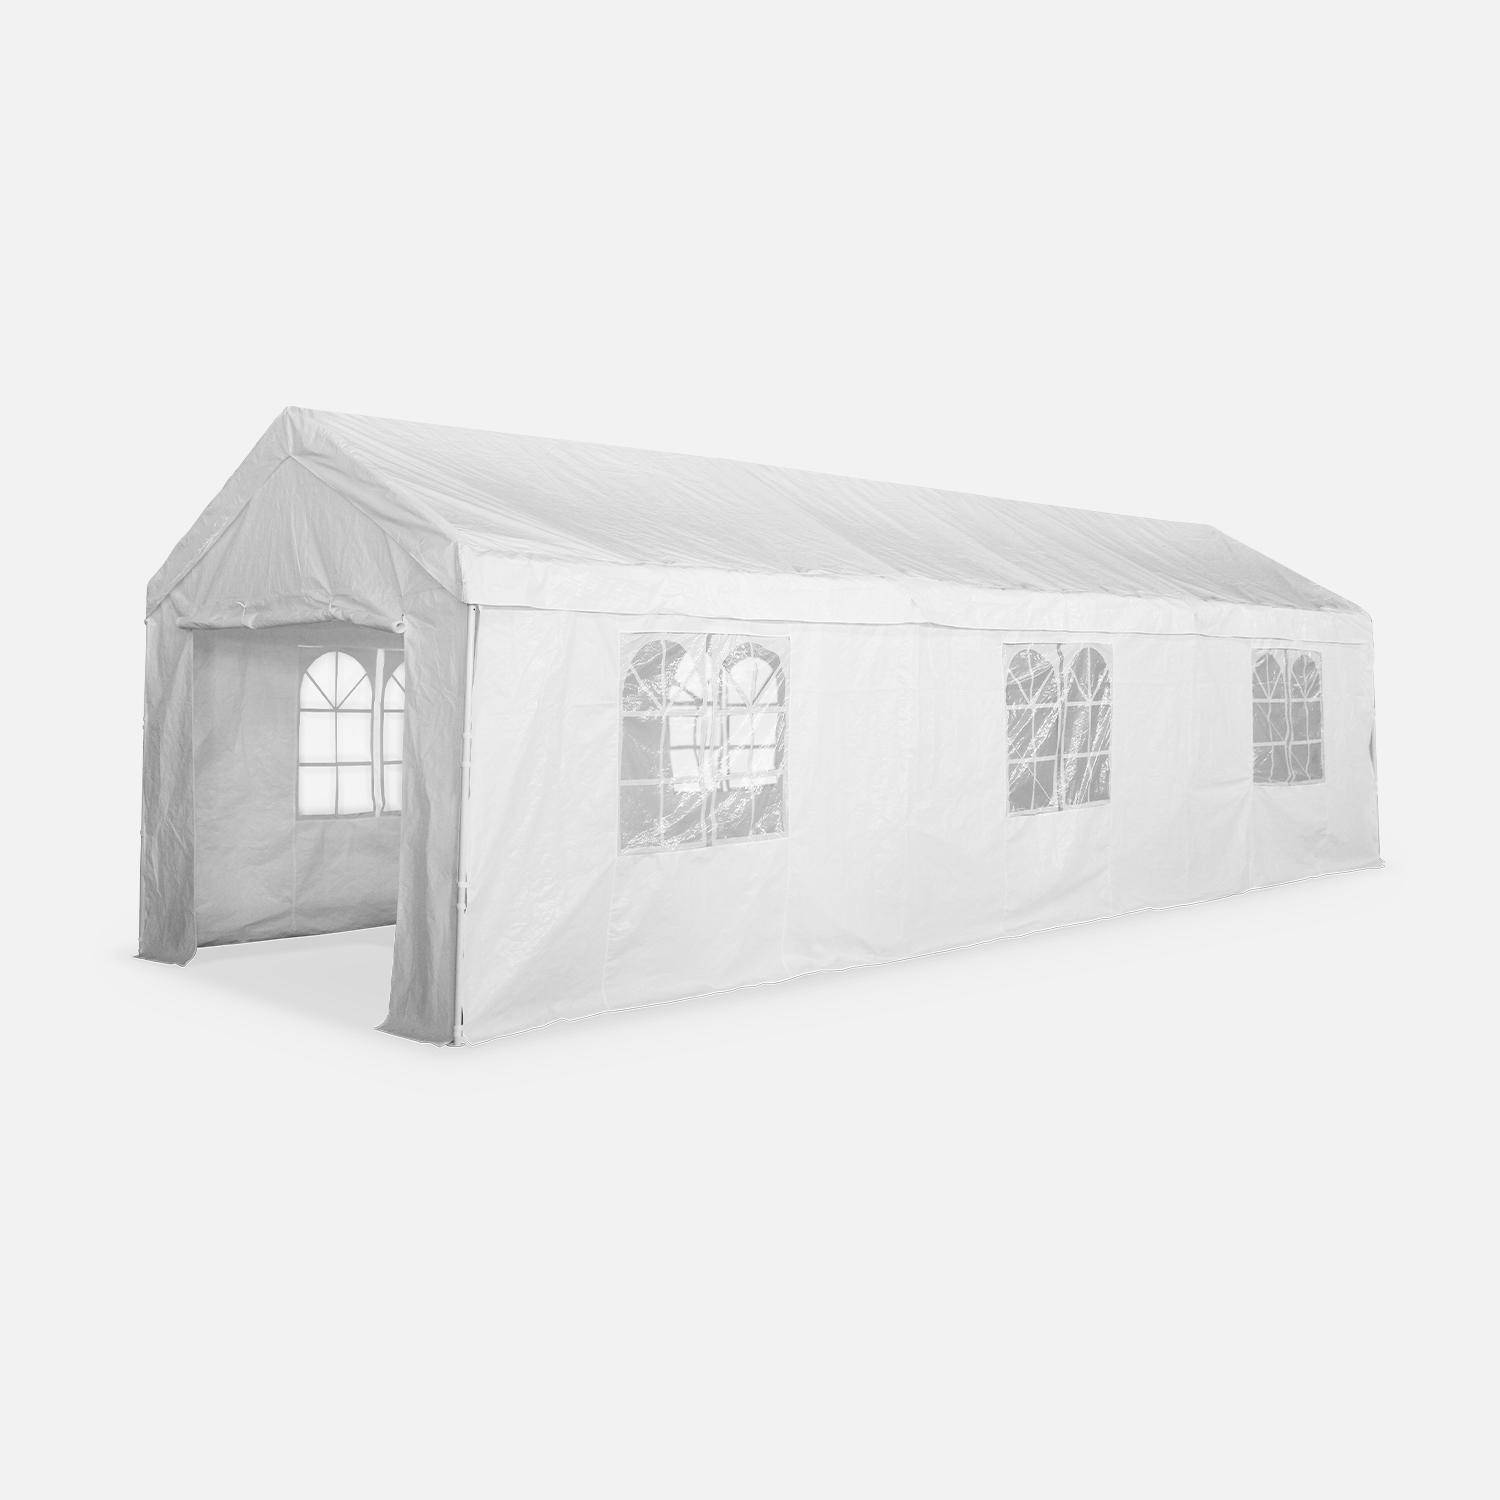 Tenda de festa - Burdigala 3x9m - Branca, conectores metálicos, tenda de jardim ideal para utilizar como pavilhão, pérgola, tenda ou caramanchão Photo1